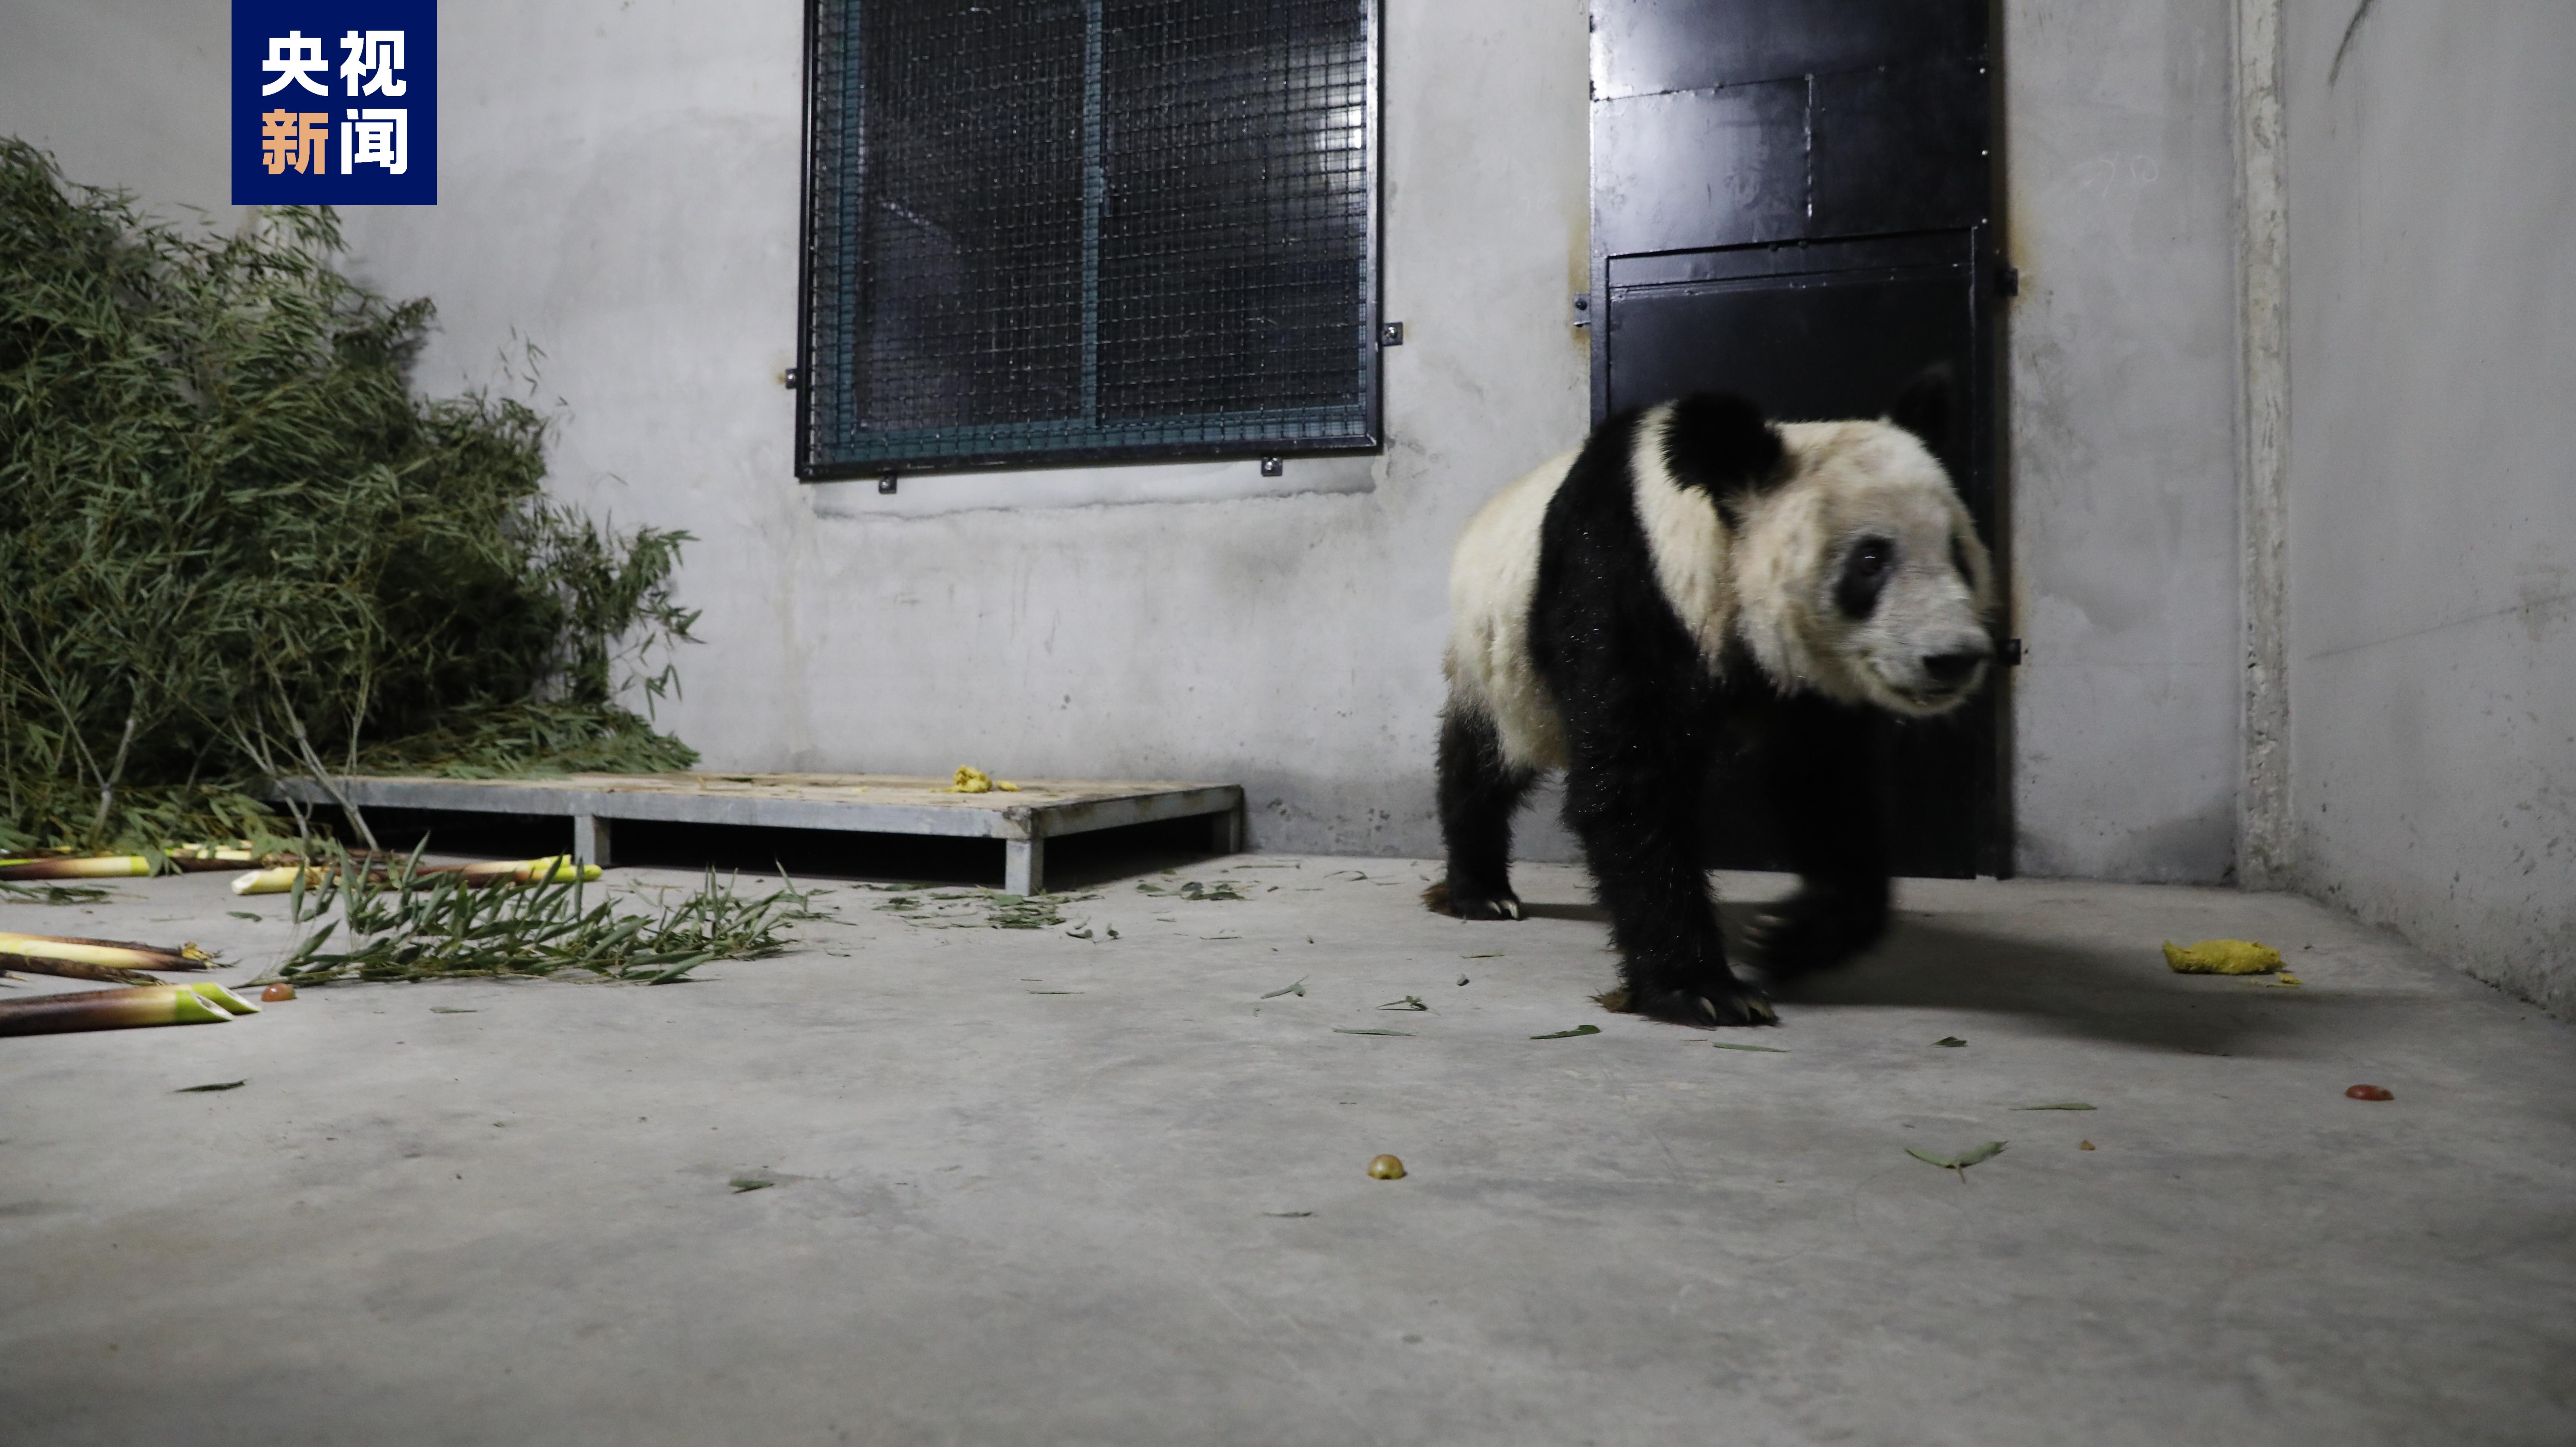 Giant panda Ya Ya arrives in Shanghai after 20 years' stay in U.S. - CGTN